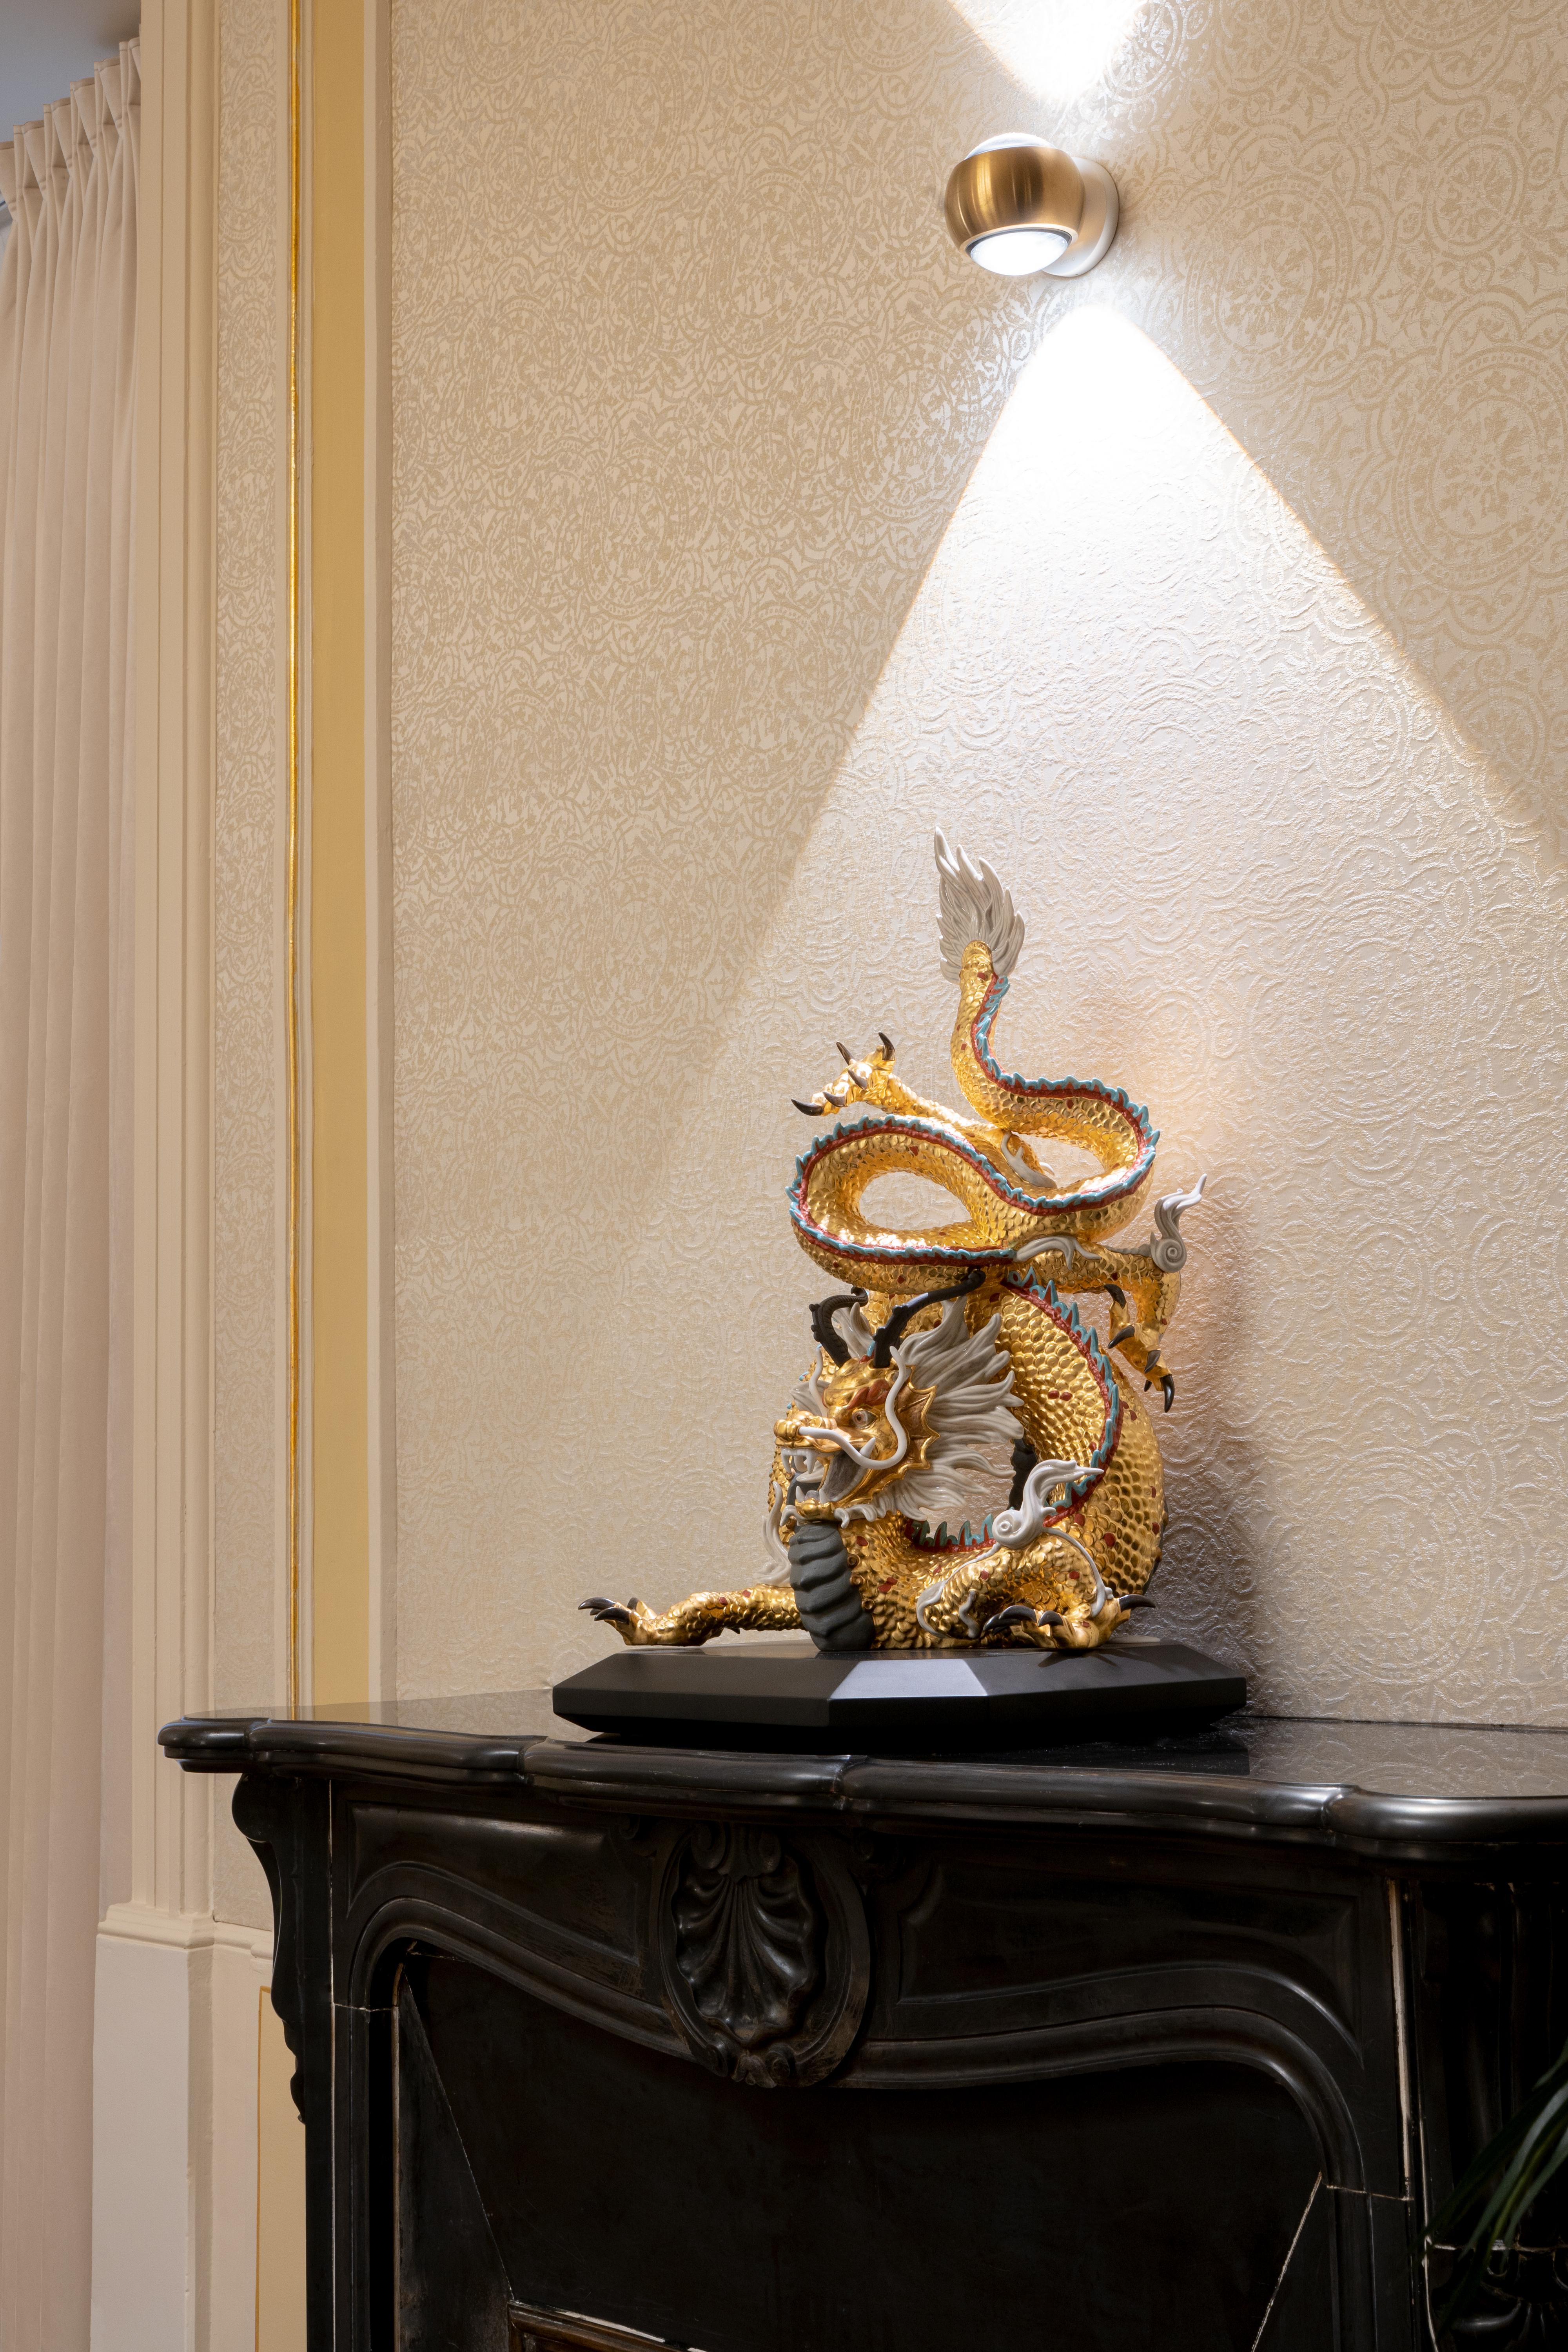 Limitierte Auflage der Skulptur eines Drachens aus hochwertigem Porzellan, dem Symbol für Macht und Glück in den asiatischen Kulturen, in einer Sonderausführung anlässlich des 70-jährigen Jubiläums von Lladró. Der schützende Drache, eine Darstellung